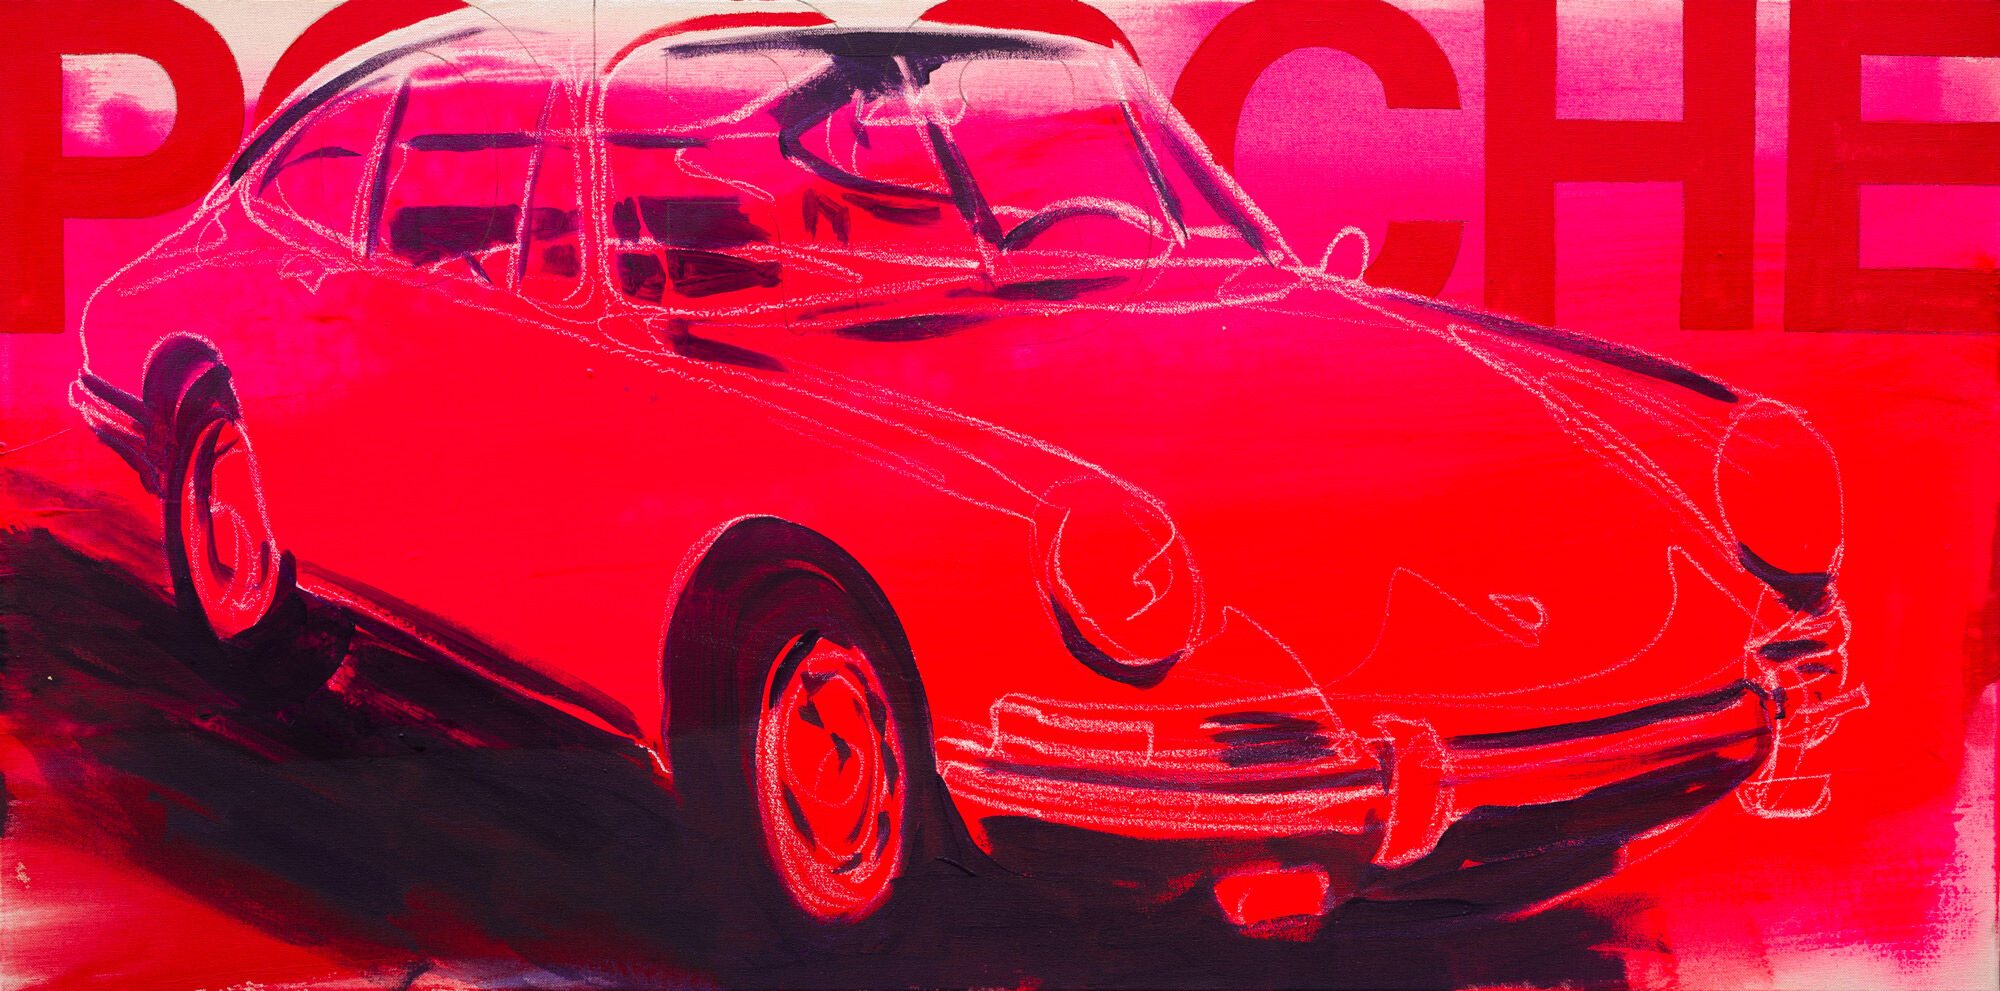 Picture "Porsche 911, 1965" (2021) (Unique piece) by Stephan Geisler